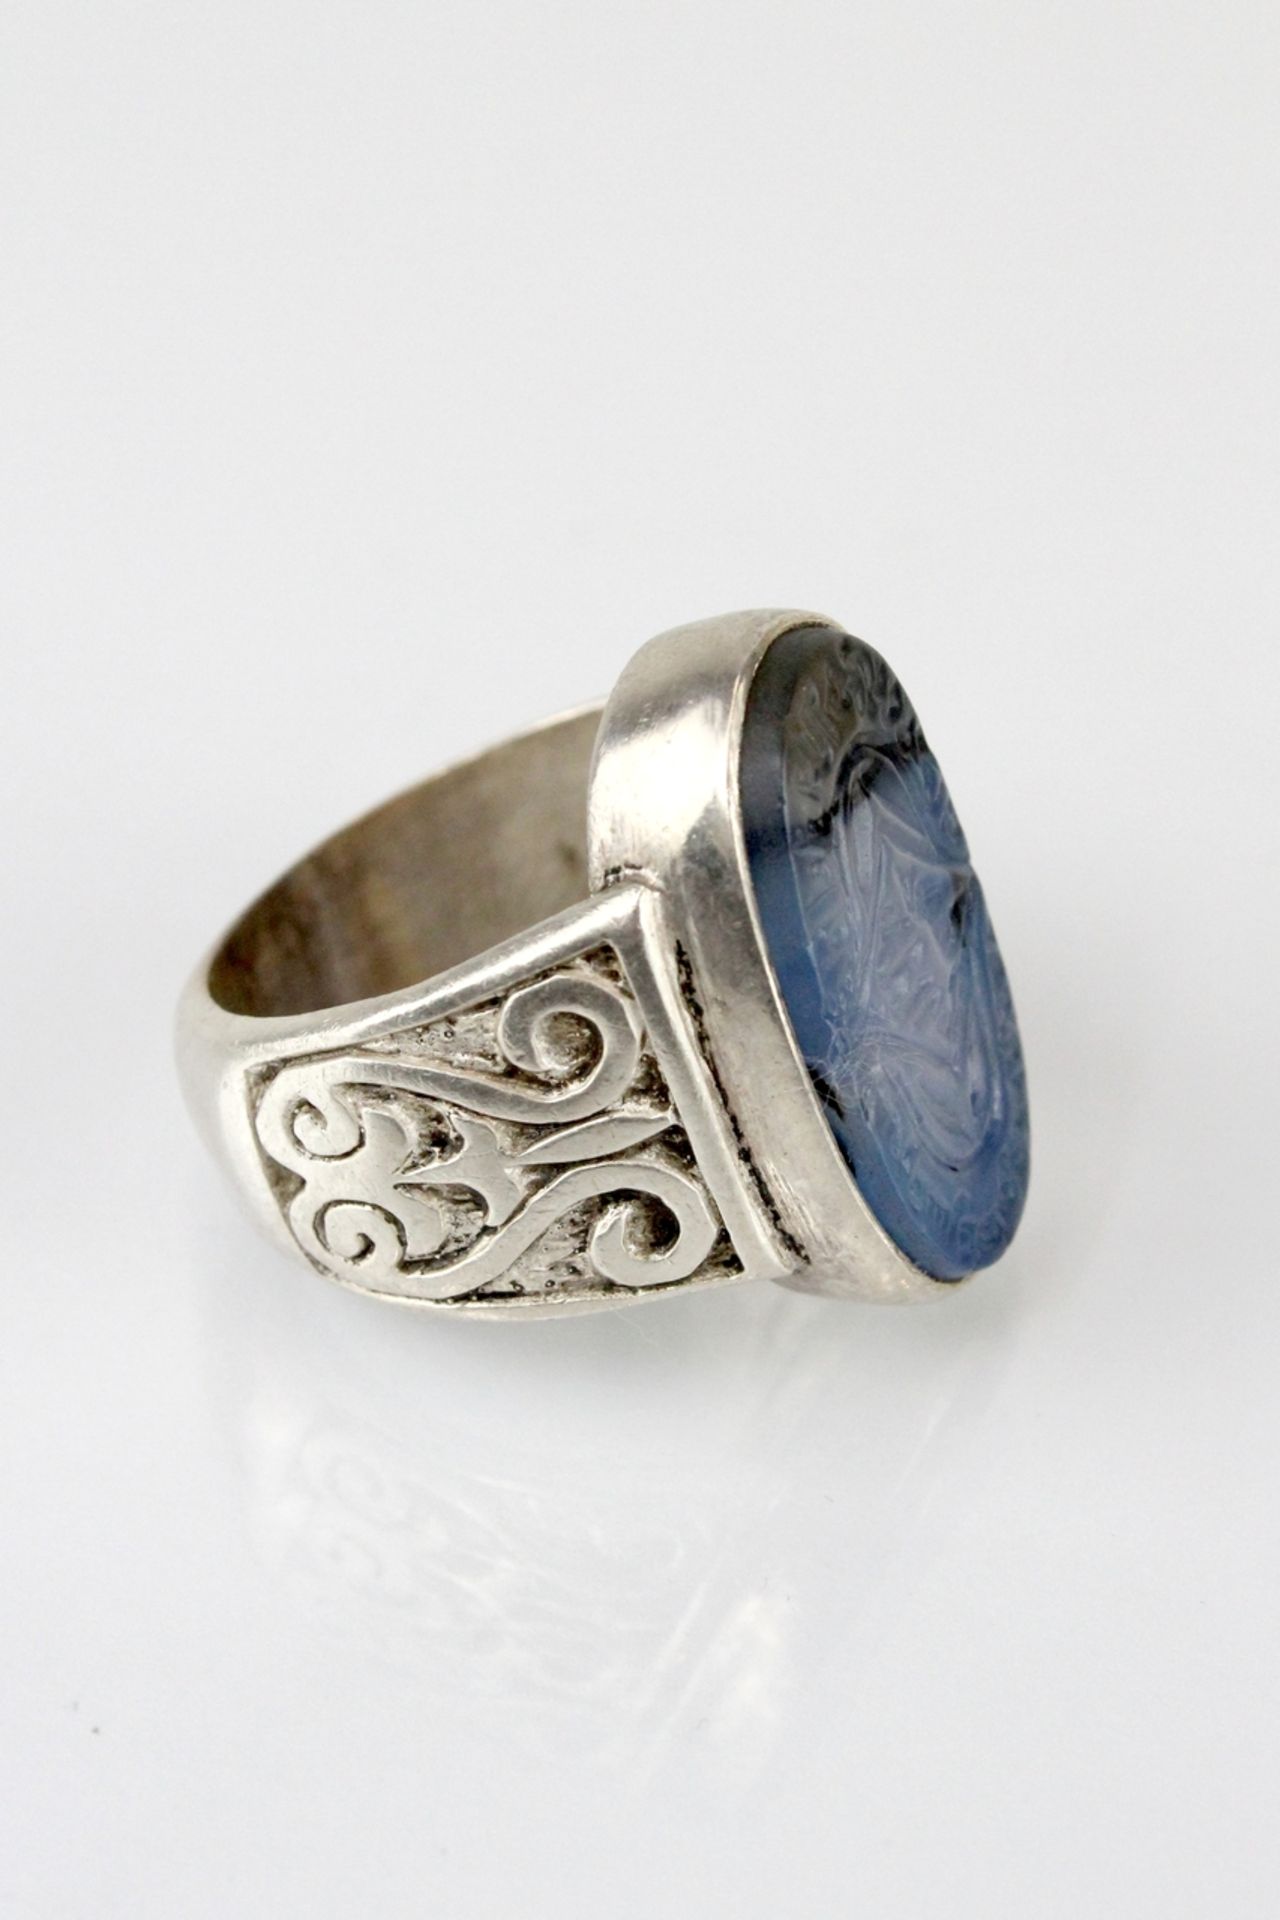 Osmanischer Silberring mit geschnittenem blauen Gemstone - Image 2 of 2